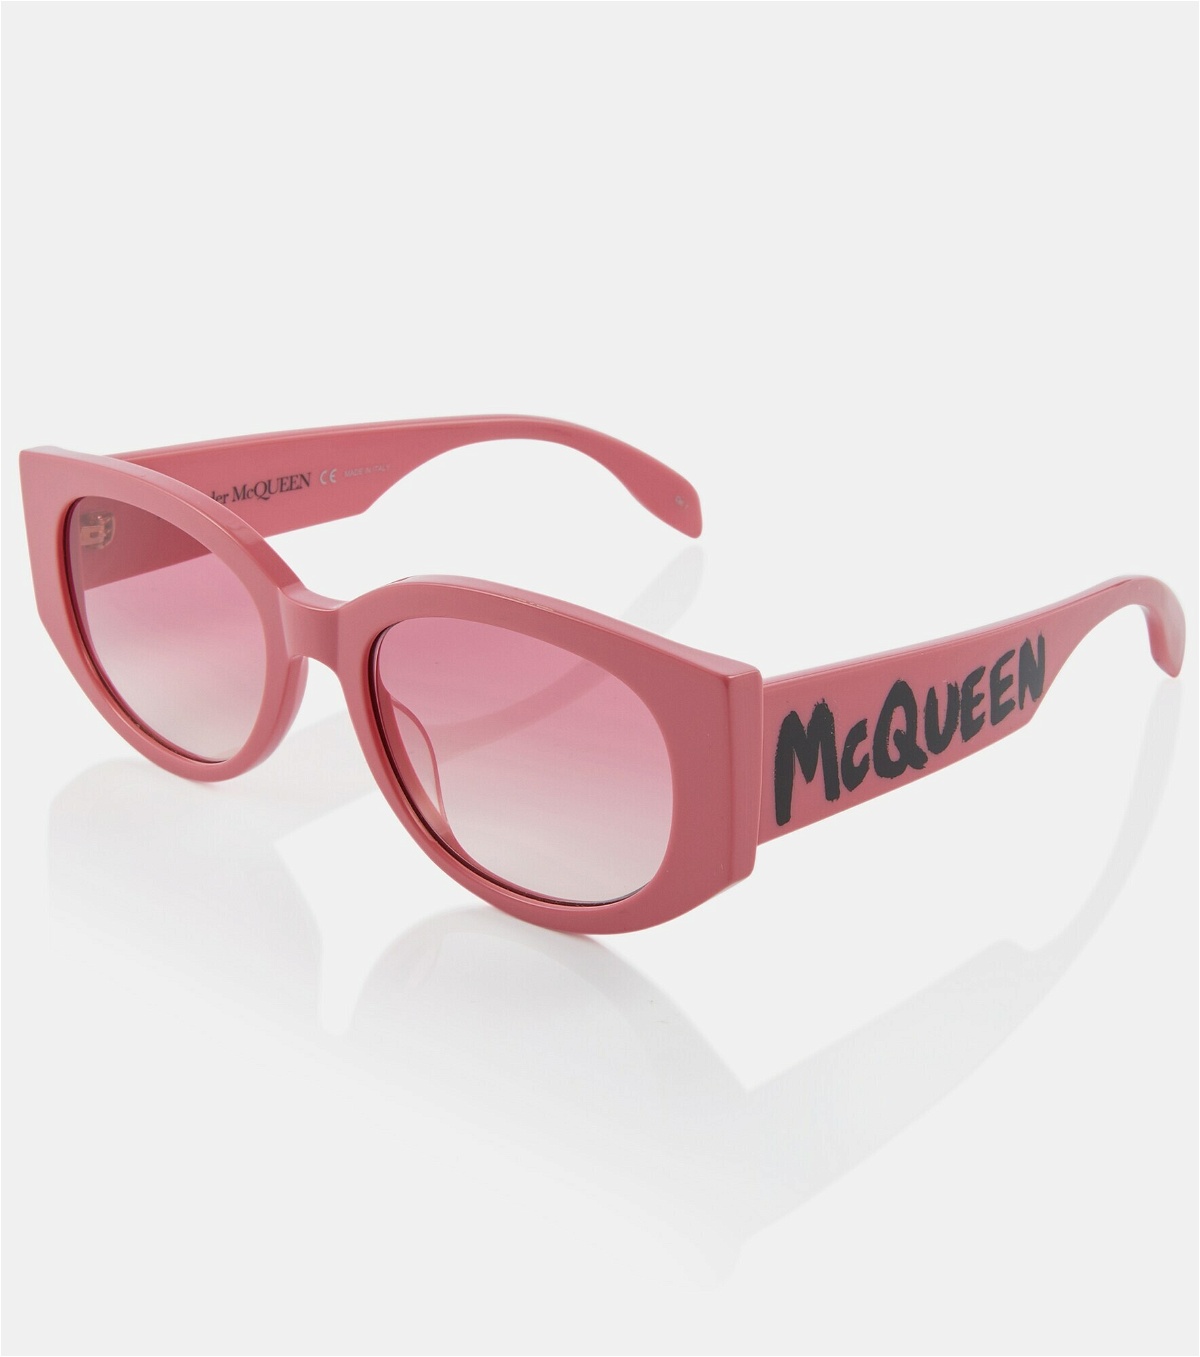 Alexander McQueen - Graffiti oval sunglasses Alexander McQueen